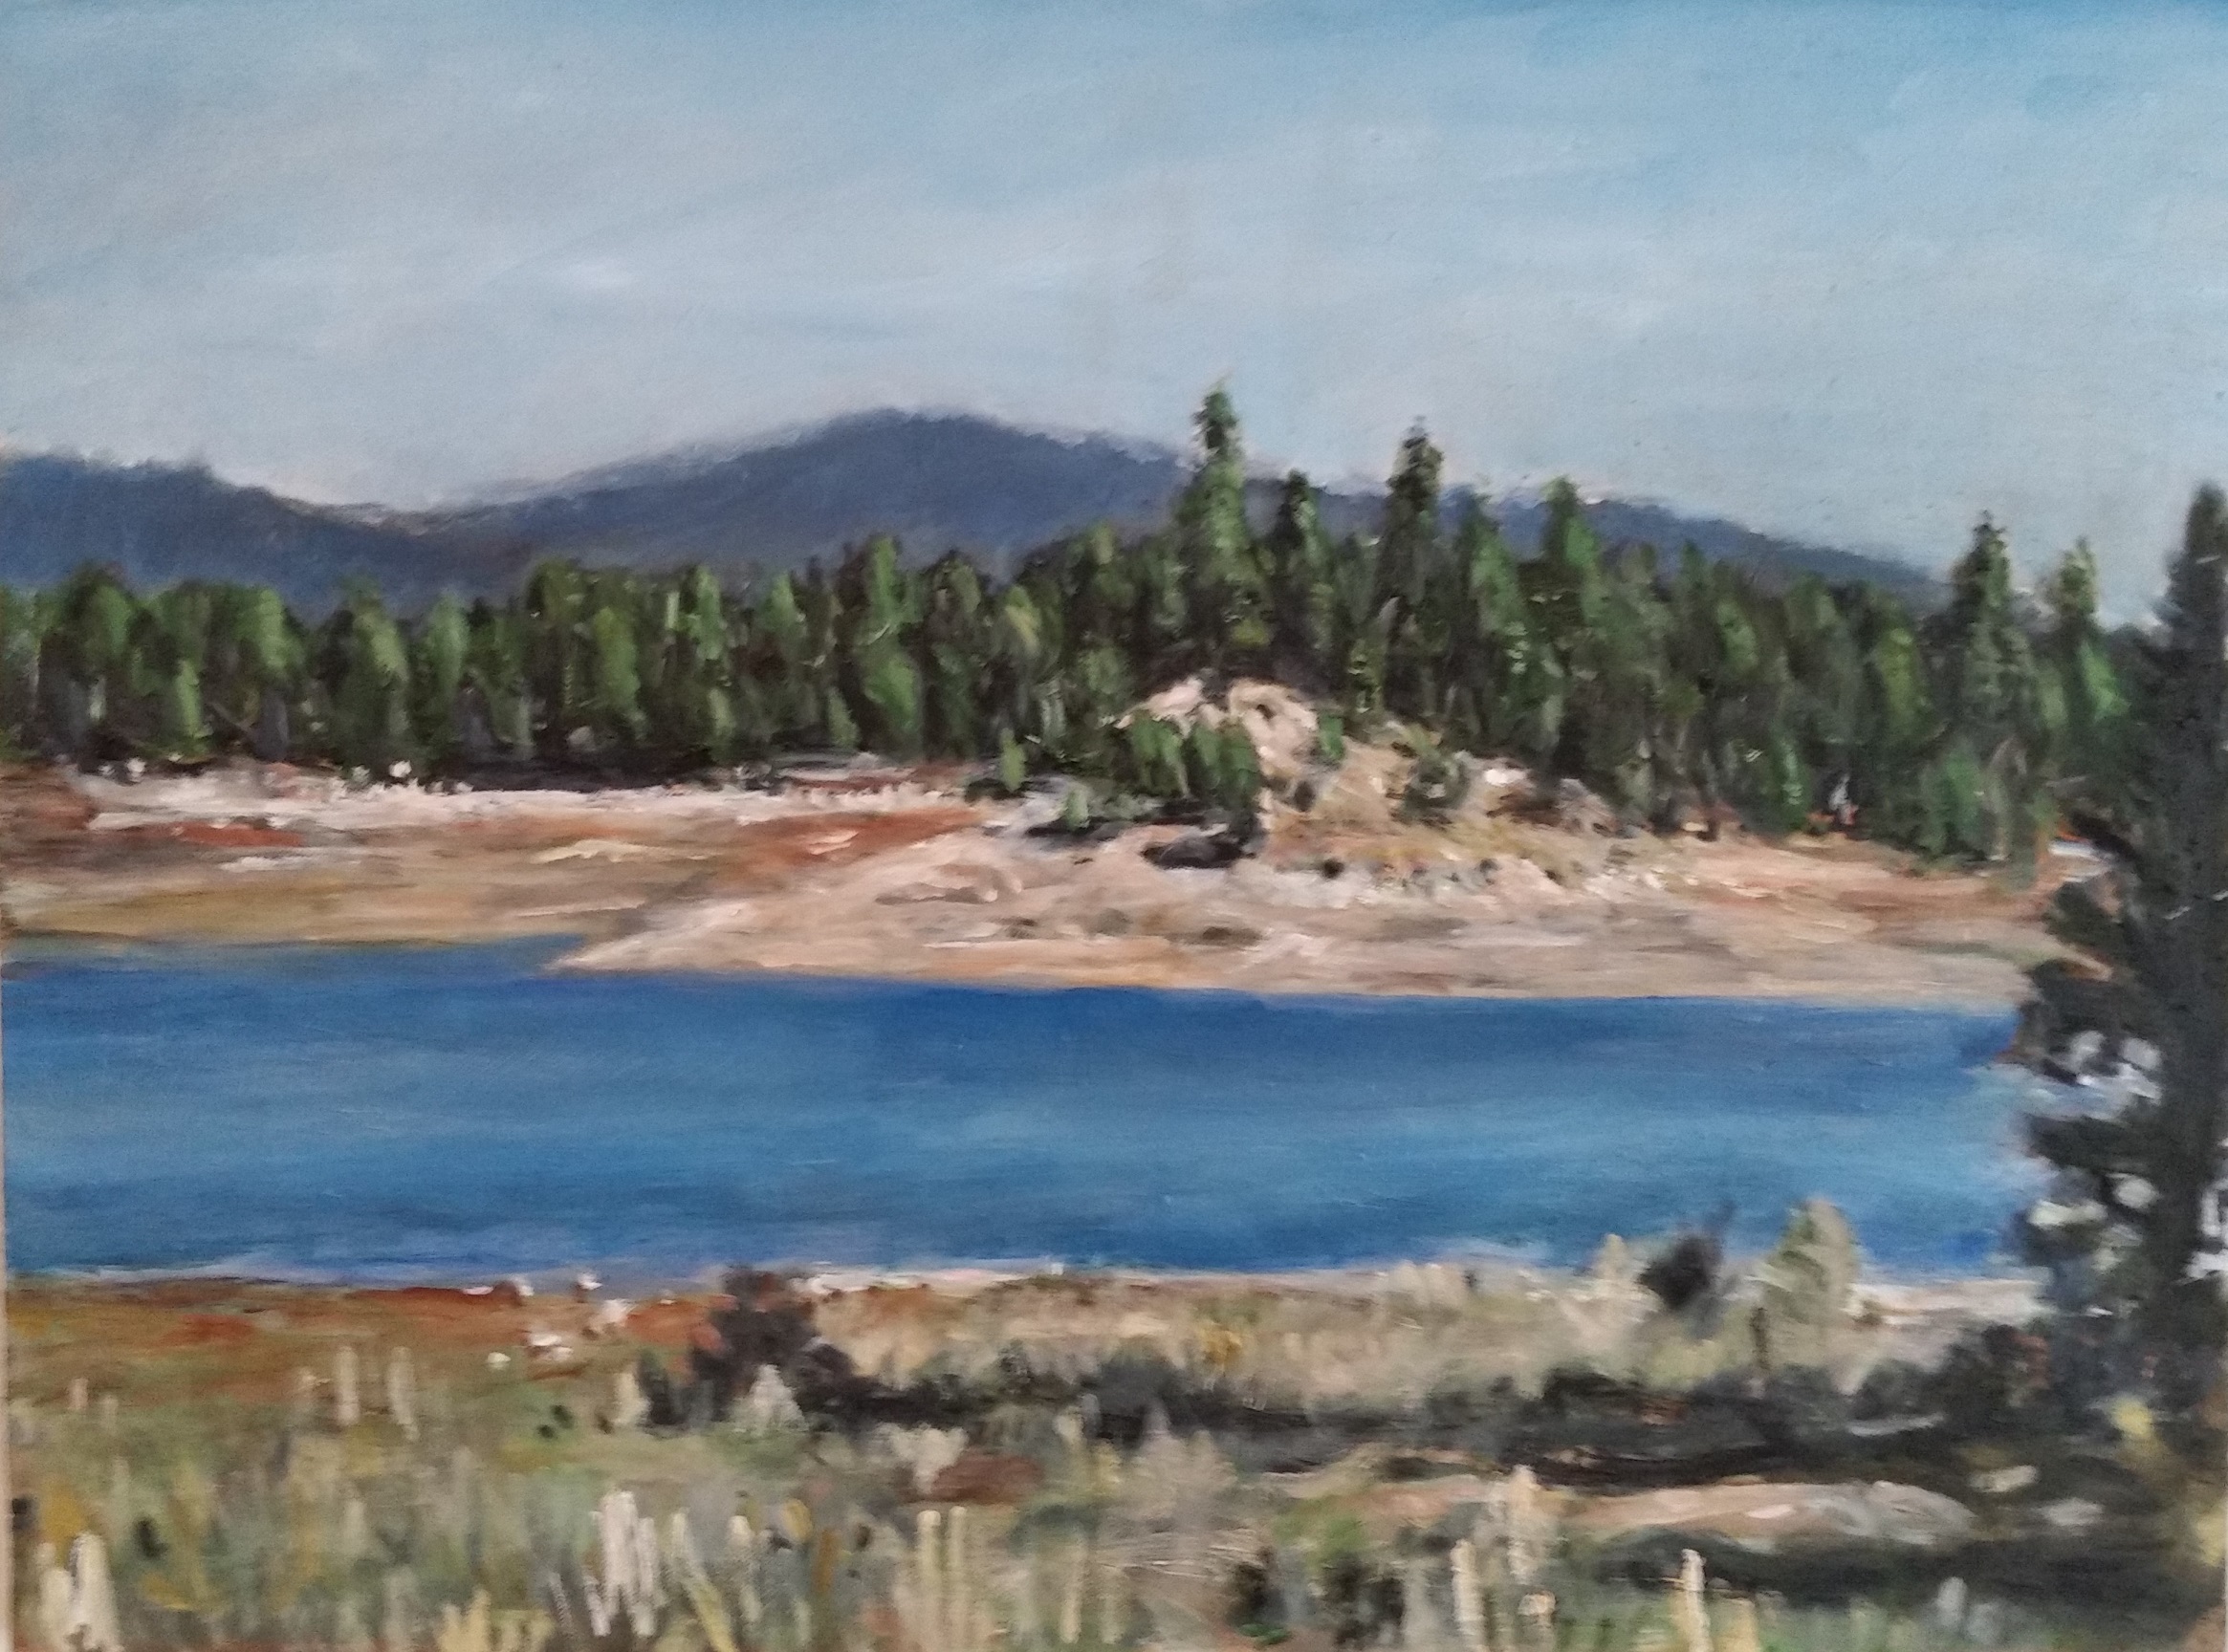 Howard Prairie. Oil on canvas